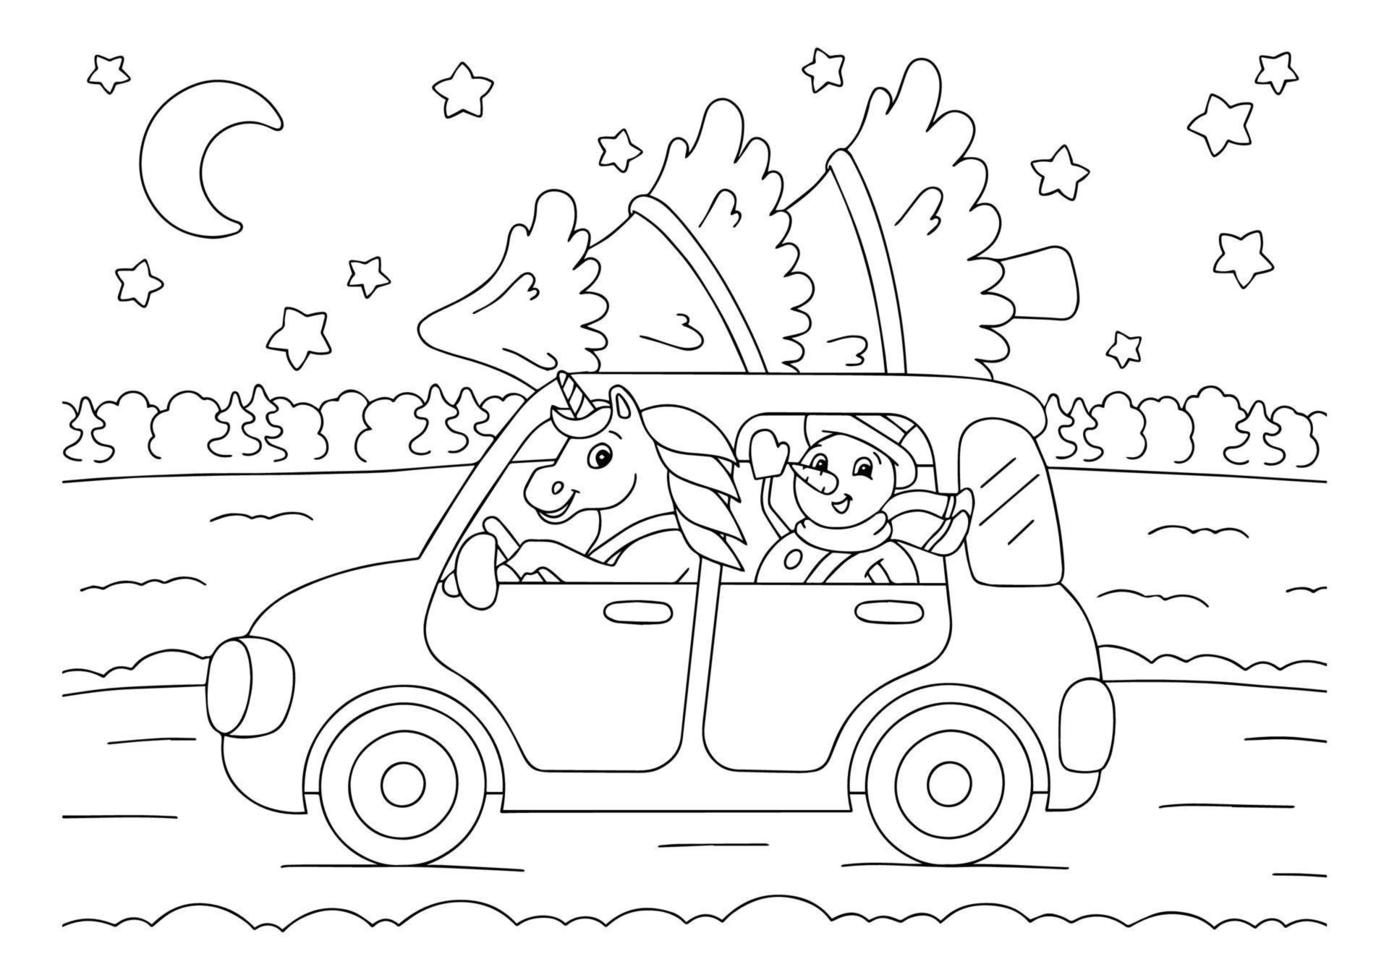 sneeuwpop en eenhoorn besturen een auto voor de kerstvakantie. kleurboekpagina voor kinderen. stripfiguur in stijl. vectorillustratie geïsoleerd op een witte achtergrond. vector